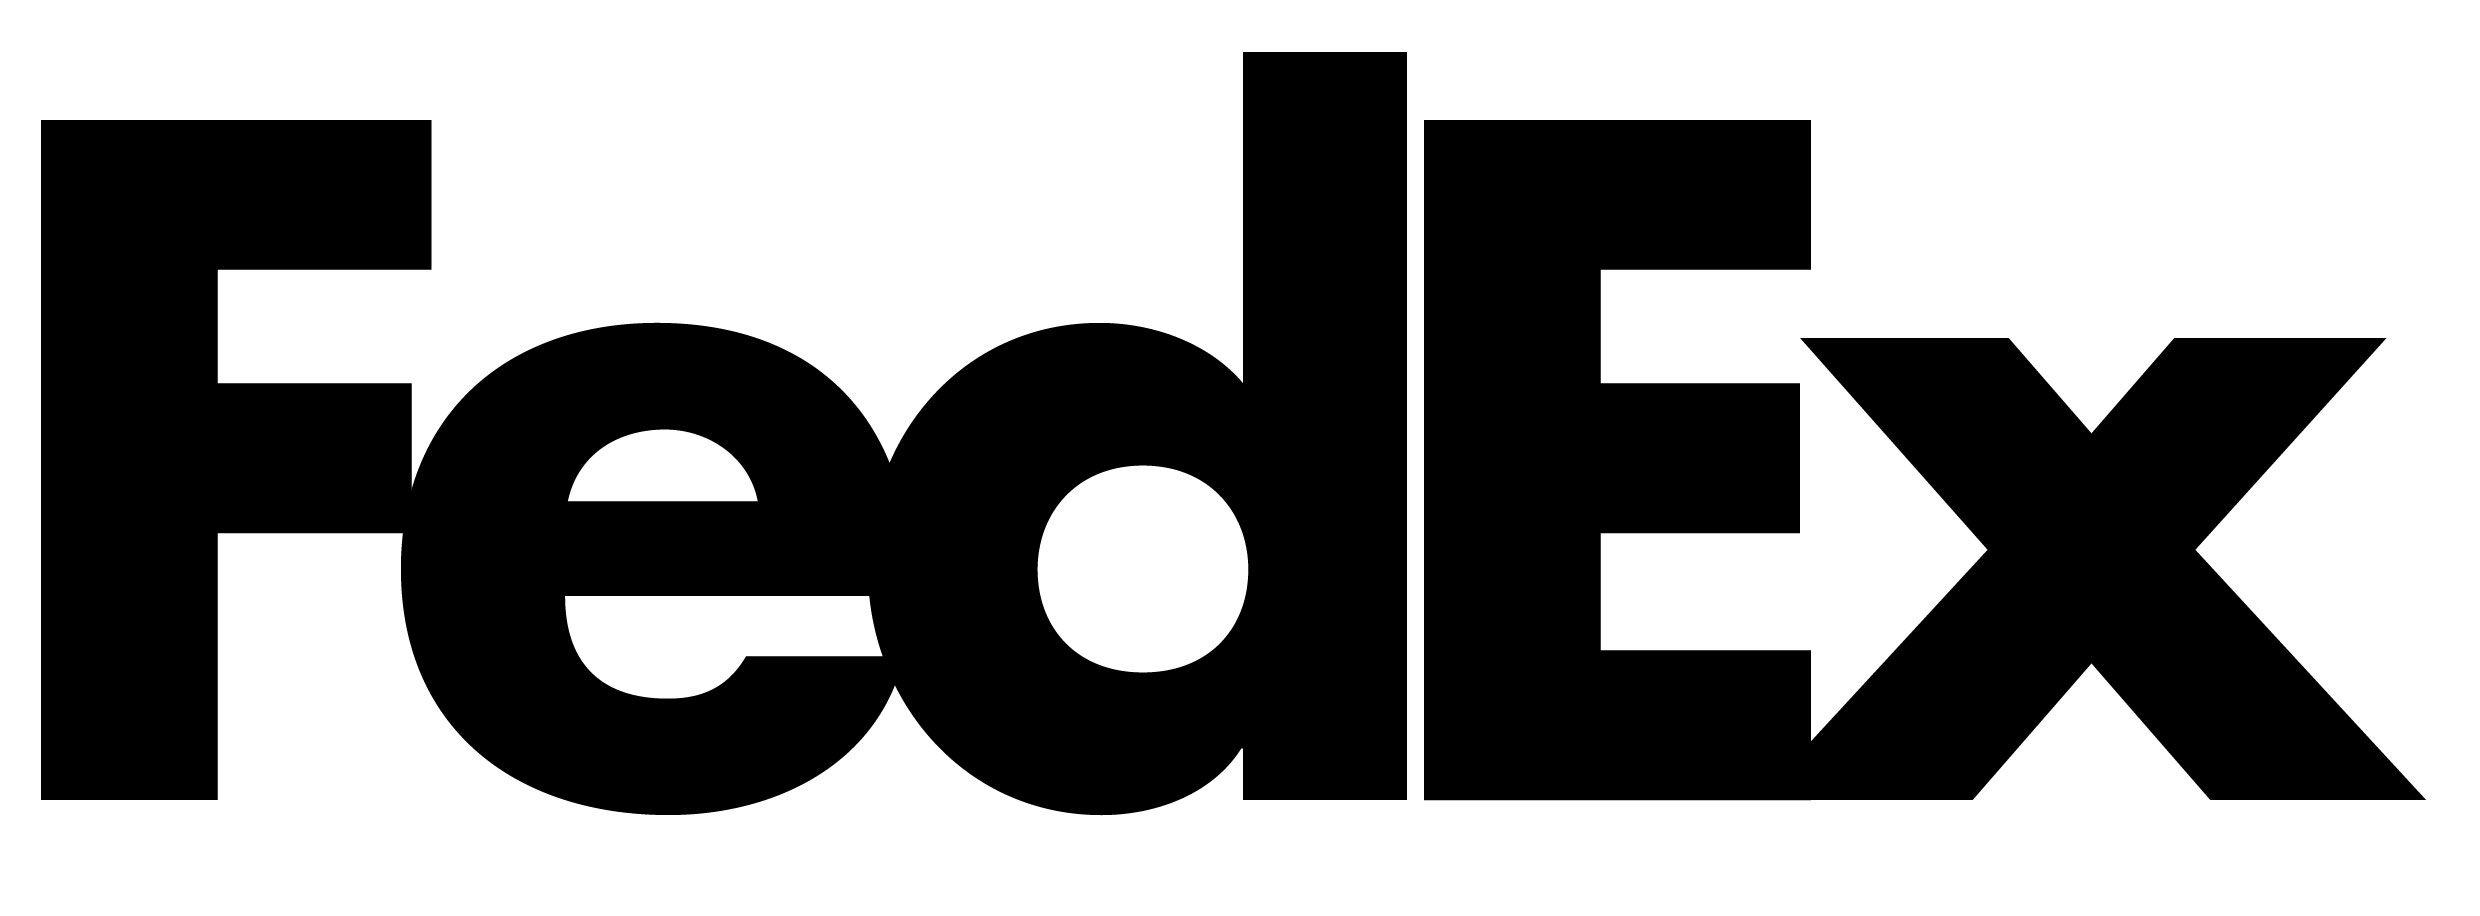 FedEx Logo - FedEx. What's That Font?